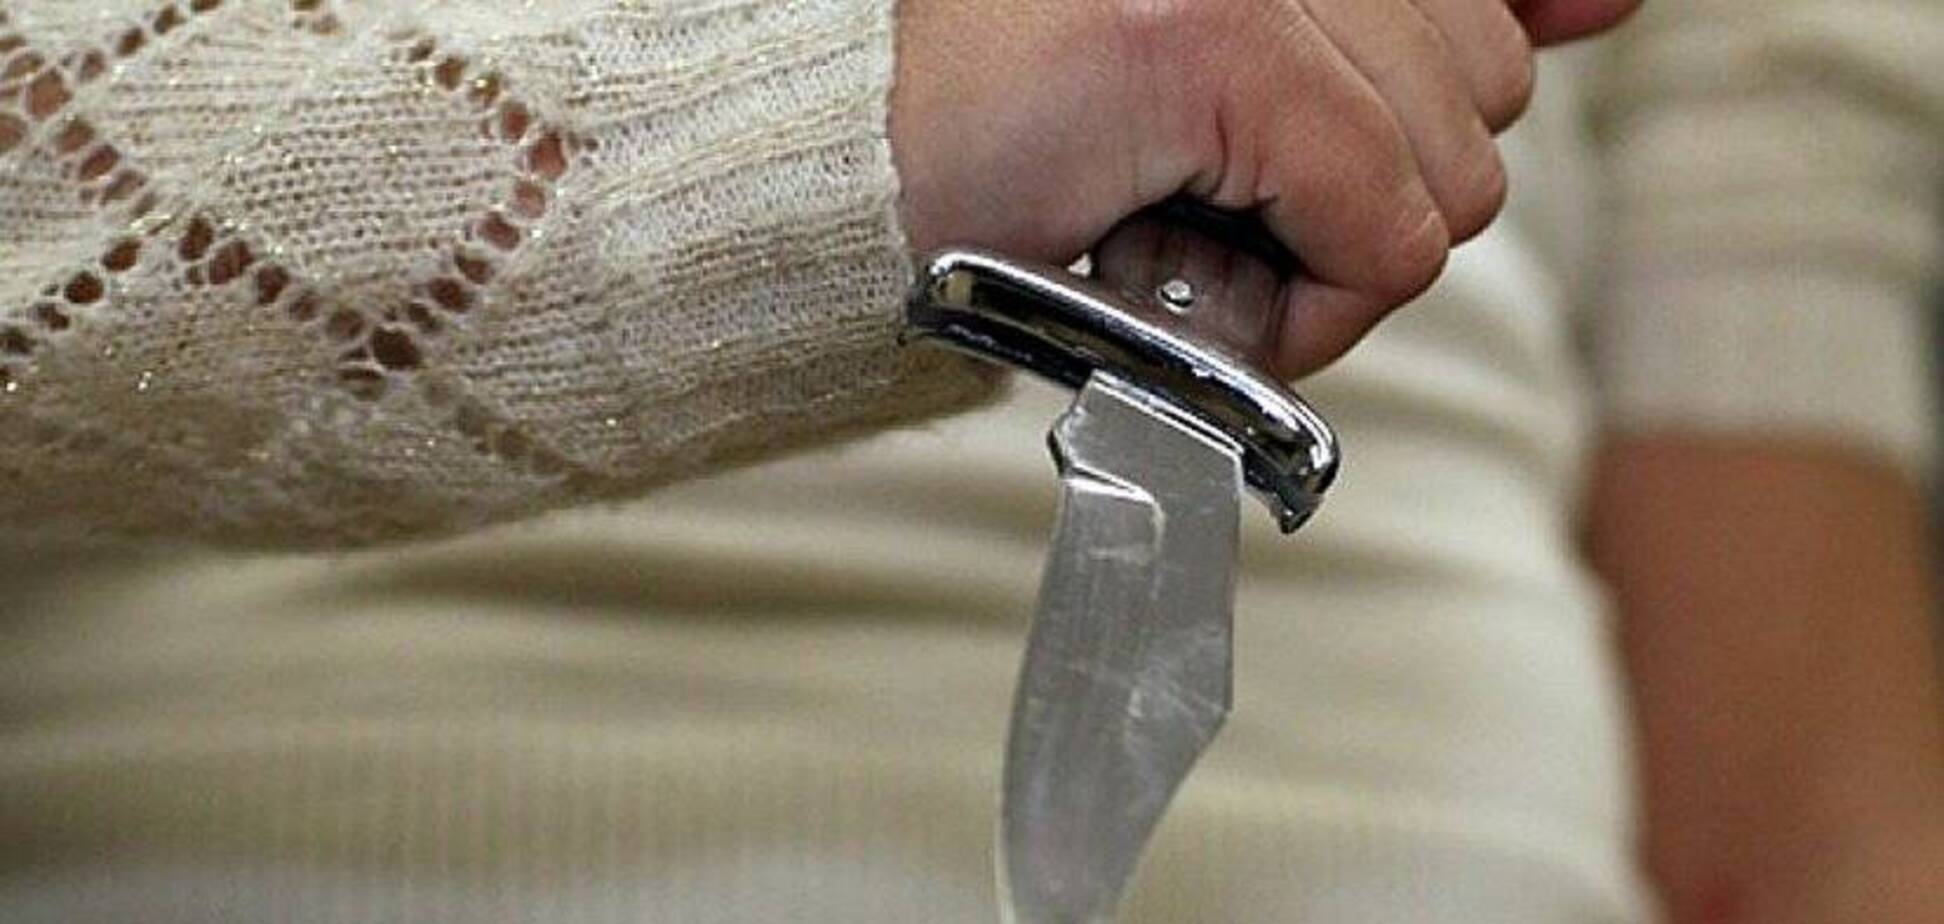 Просила еды: в Днепре женщина изрезала ножом бабушку. Фото 18+